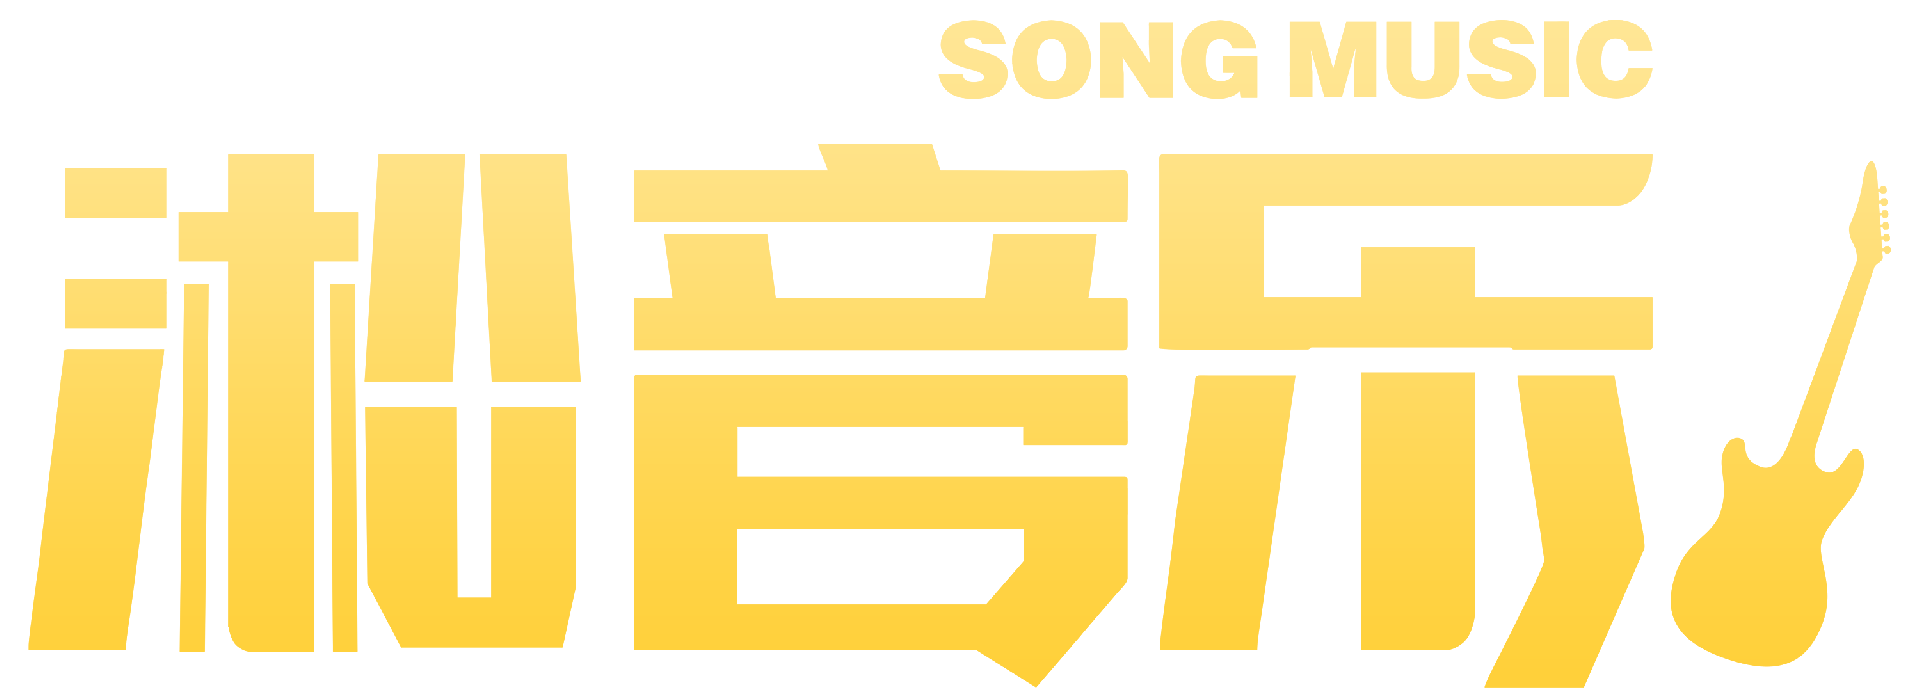 企业歌曲_音乐制作_原创定制音乐_SONG MUSIC淞音乐 - 广州王小淞音乐创作有限公司